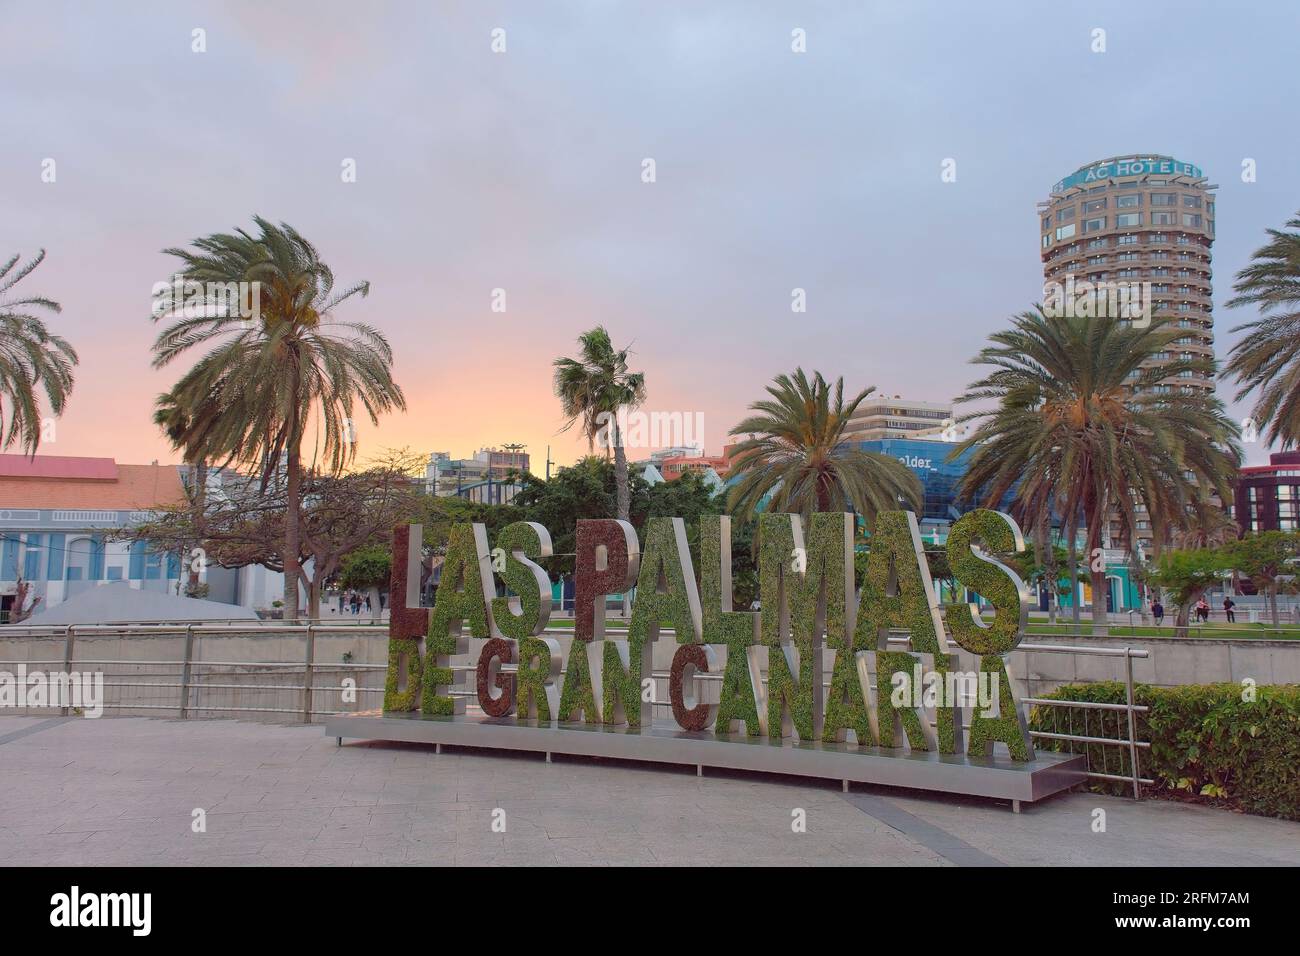 Schild "Las Palmas de Gran Canaria" vor Palmen und Himmel im Stadtzentrum von Las Palmas, Spanien Stockfoto